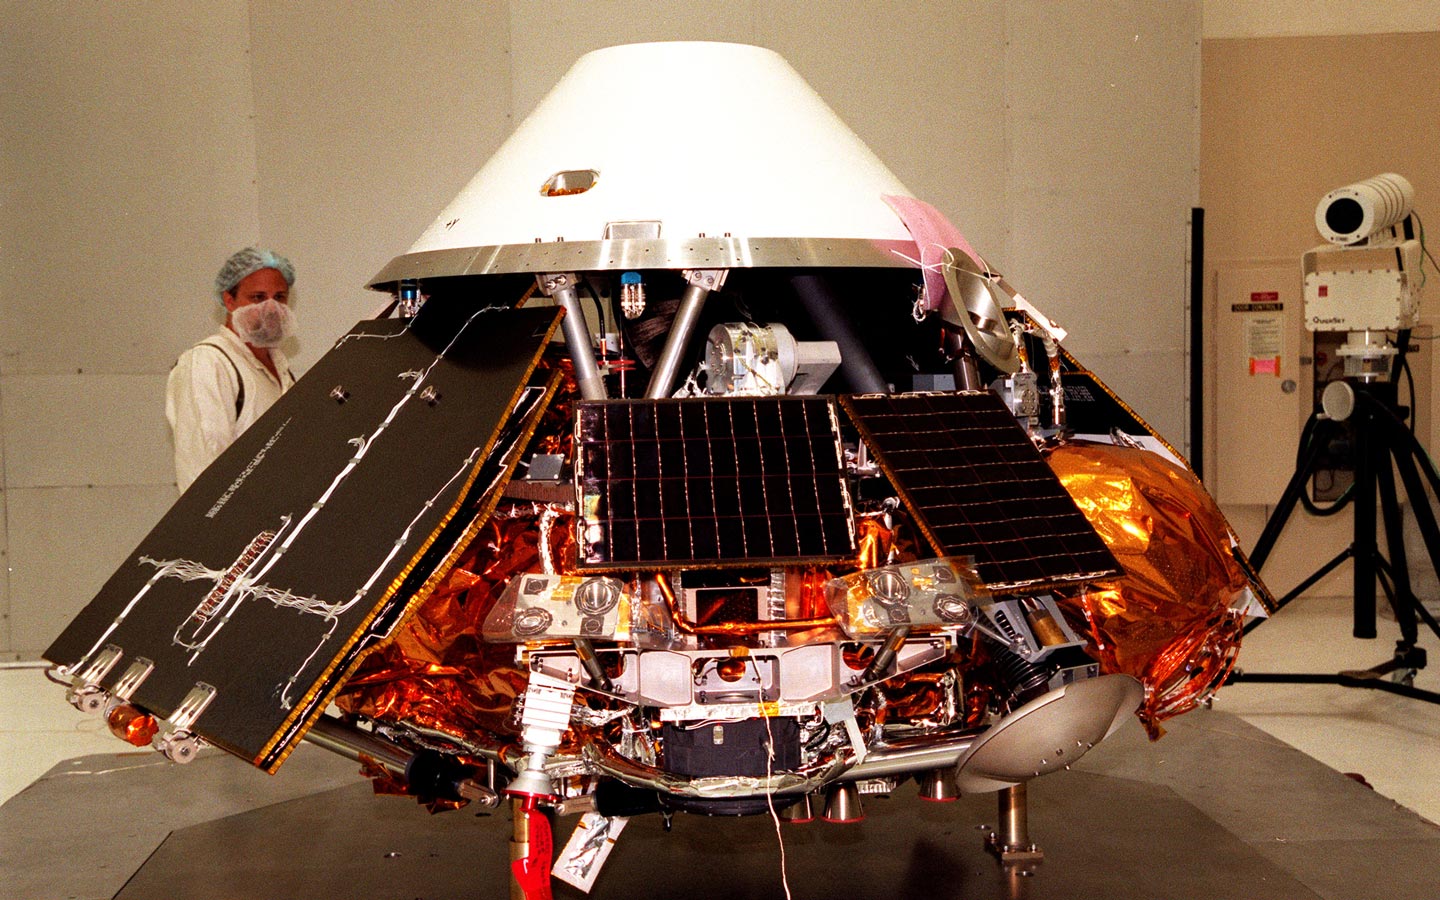 mars-polar-lander-undergoes-testing